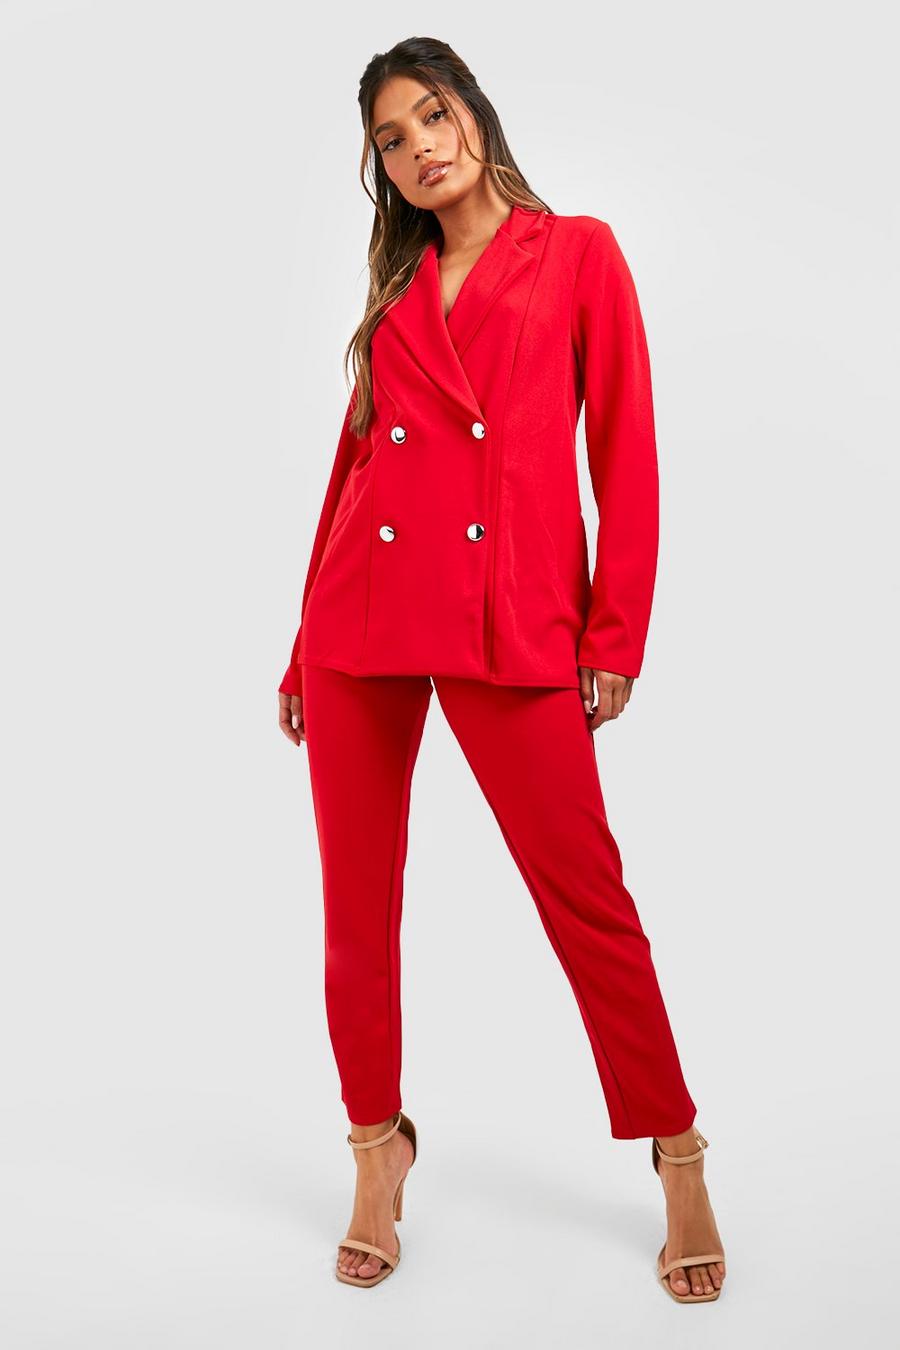 אדום rosso סט חליפה בלייזר עם סגירה בהצלבה ומכנסיים